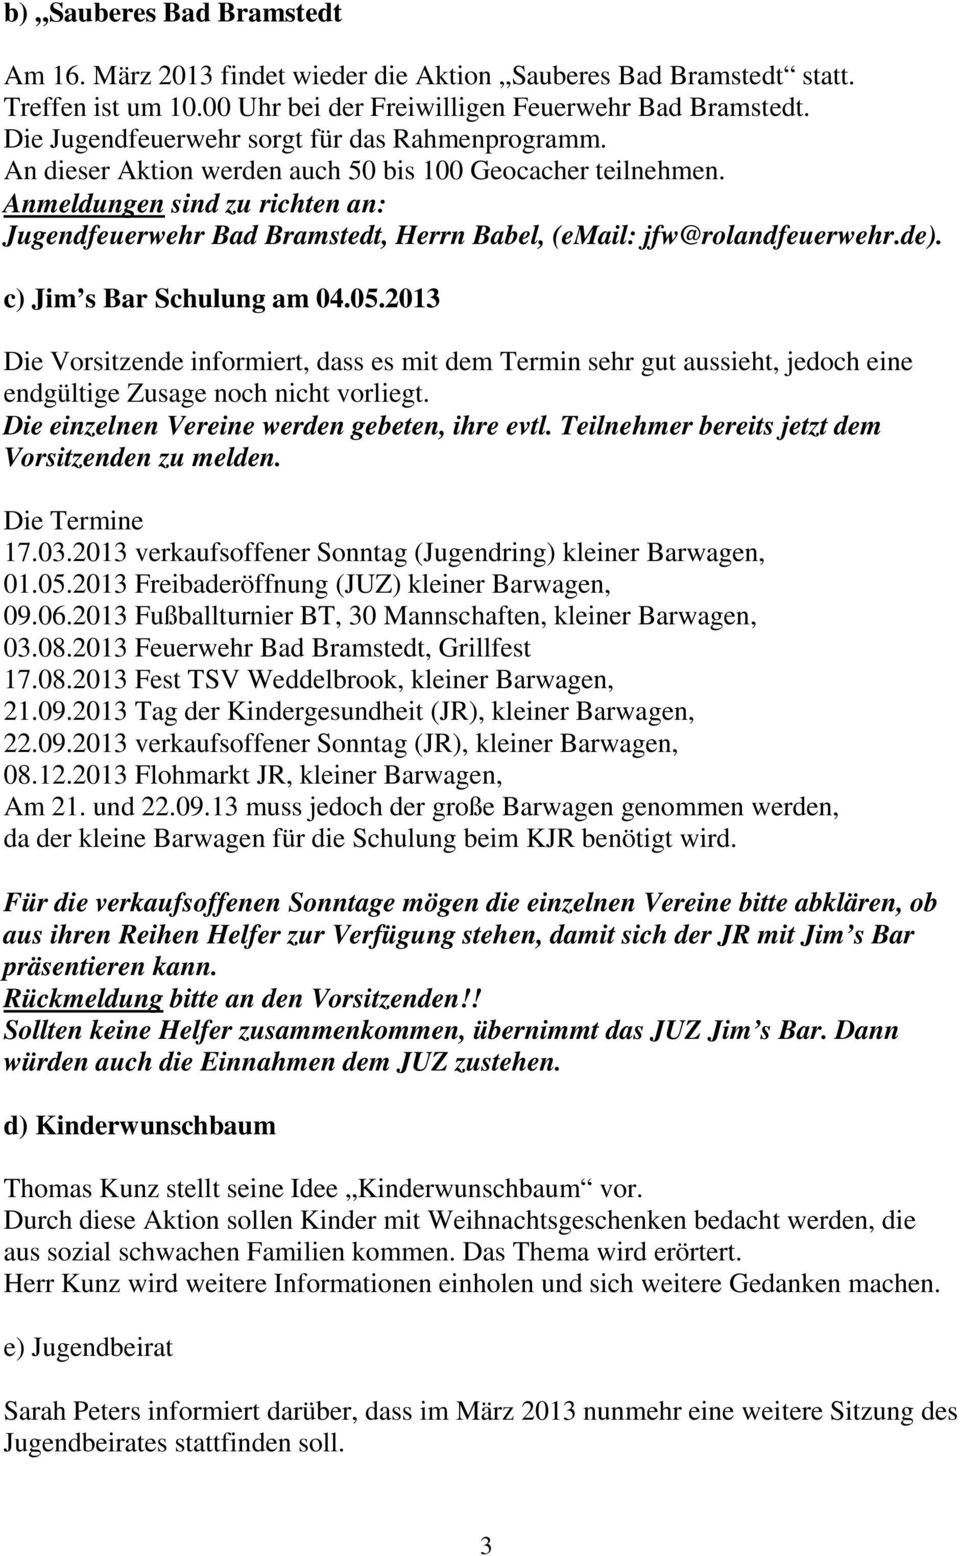 Anmeldungen sind zu richten an: Jugendfeuerwehr Bad Bramstedt, Herrn Babel, (email: jfw@rolandfeuerwehr.de). c) Jim s Bar Schulung am 04.05.